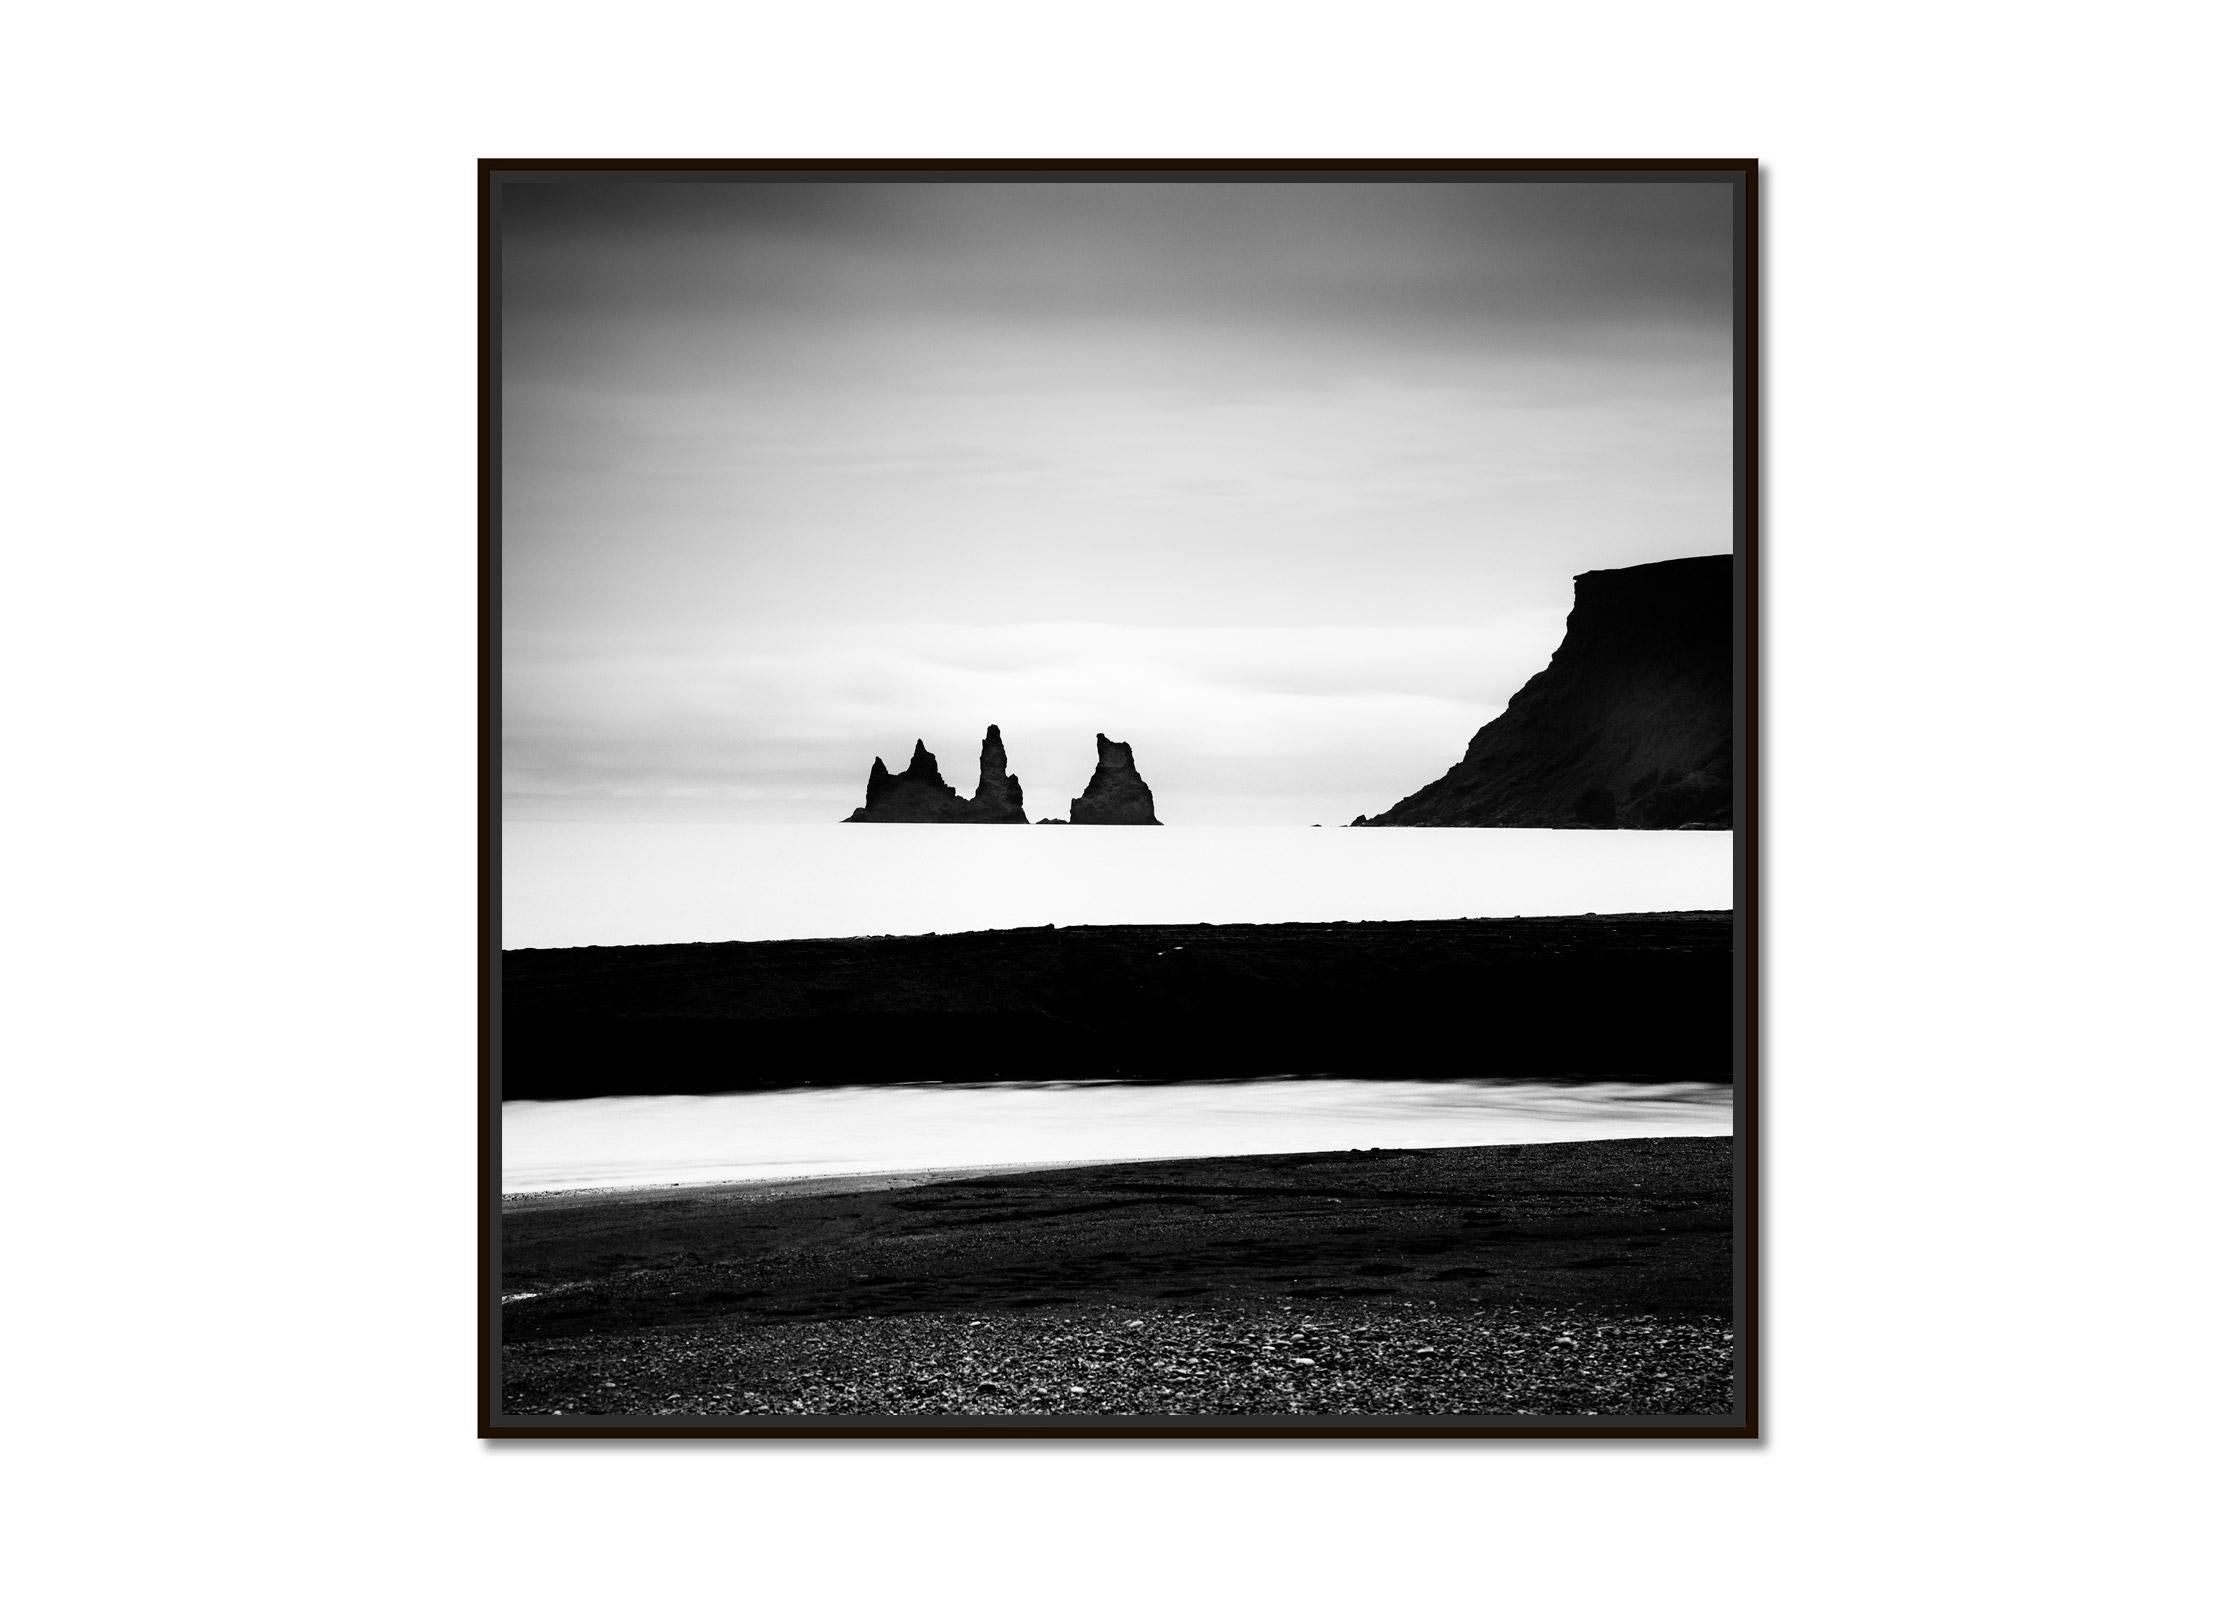 Reynisdrangar, plage de sable noir, Islande, photographie noir et blanc, paysage - Photograph de Gerald Berghammer